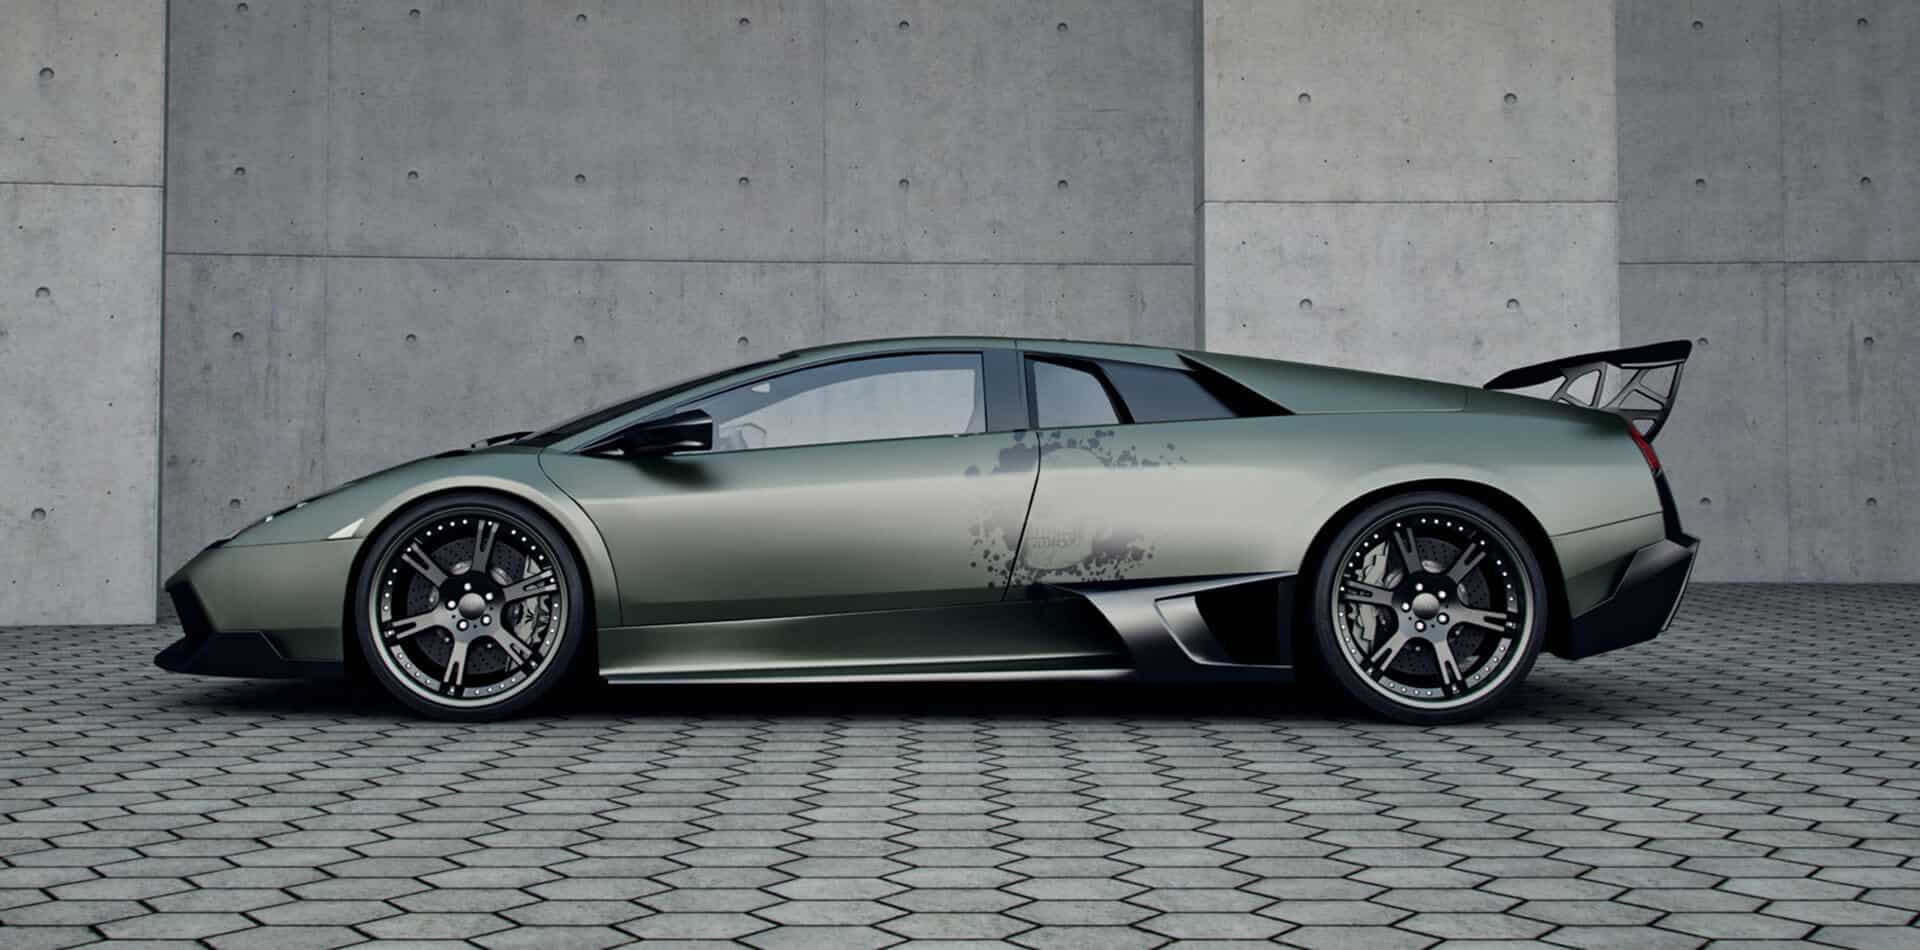 body tuning 2x Radlauf Kotflügel Leiste für Lamborghini Murciélago Roadster 